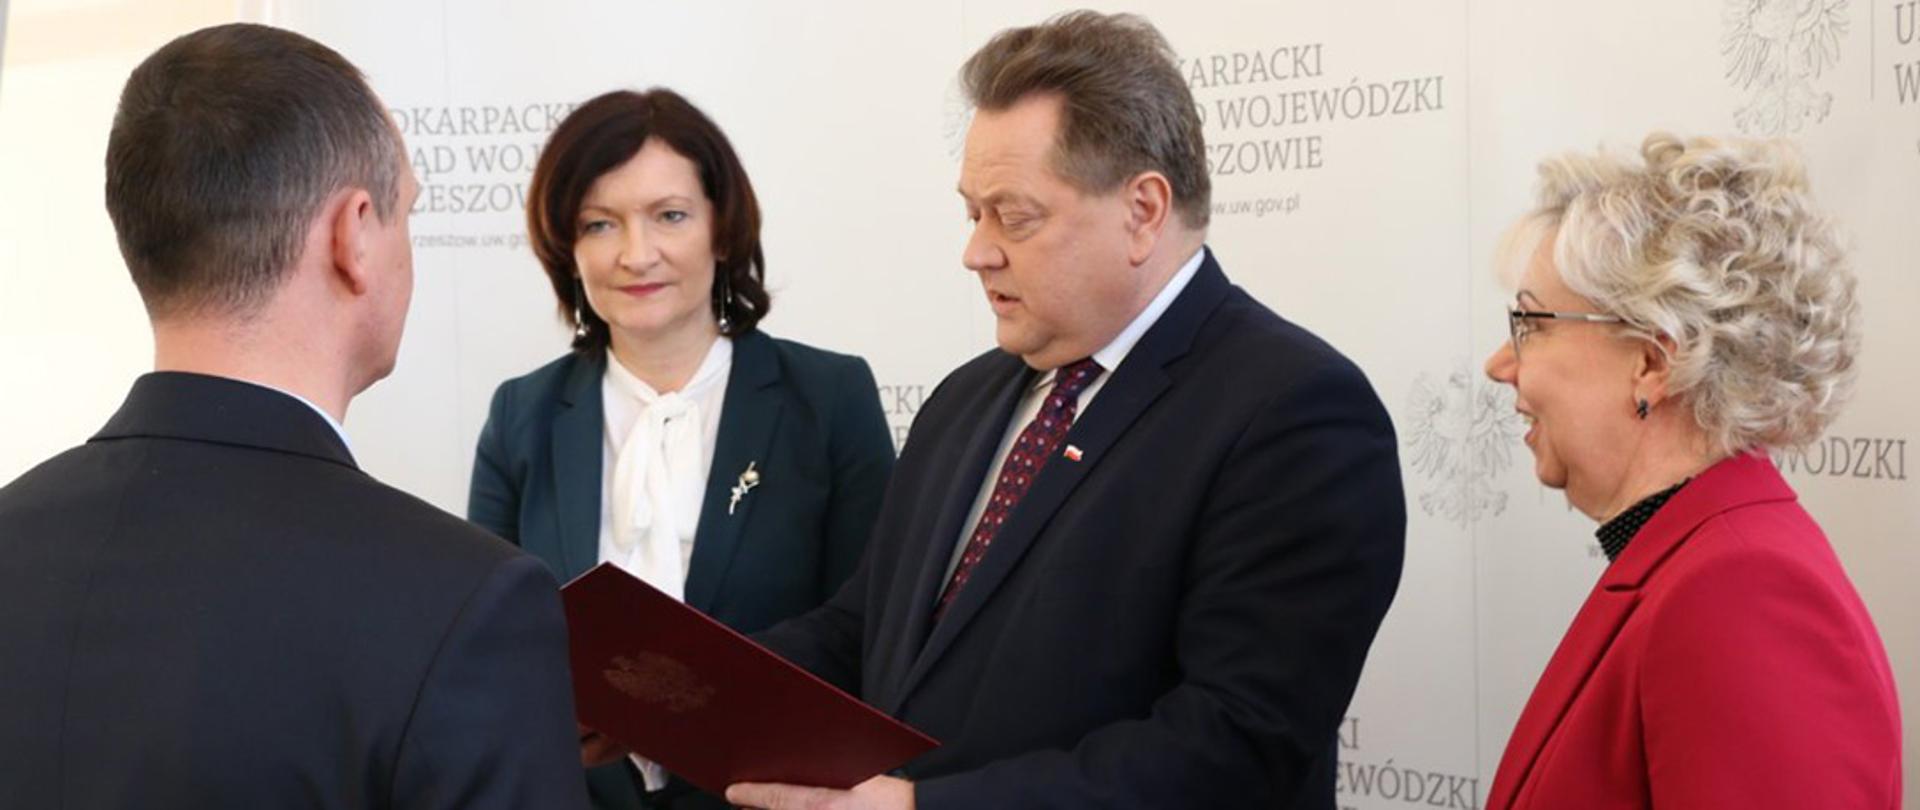 Wiceminister Jarosław Zieliński wręczył promesy dla samorządów z województwa podkarpackiego.